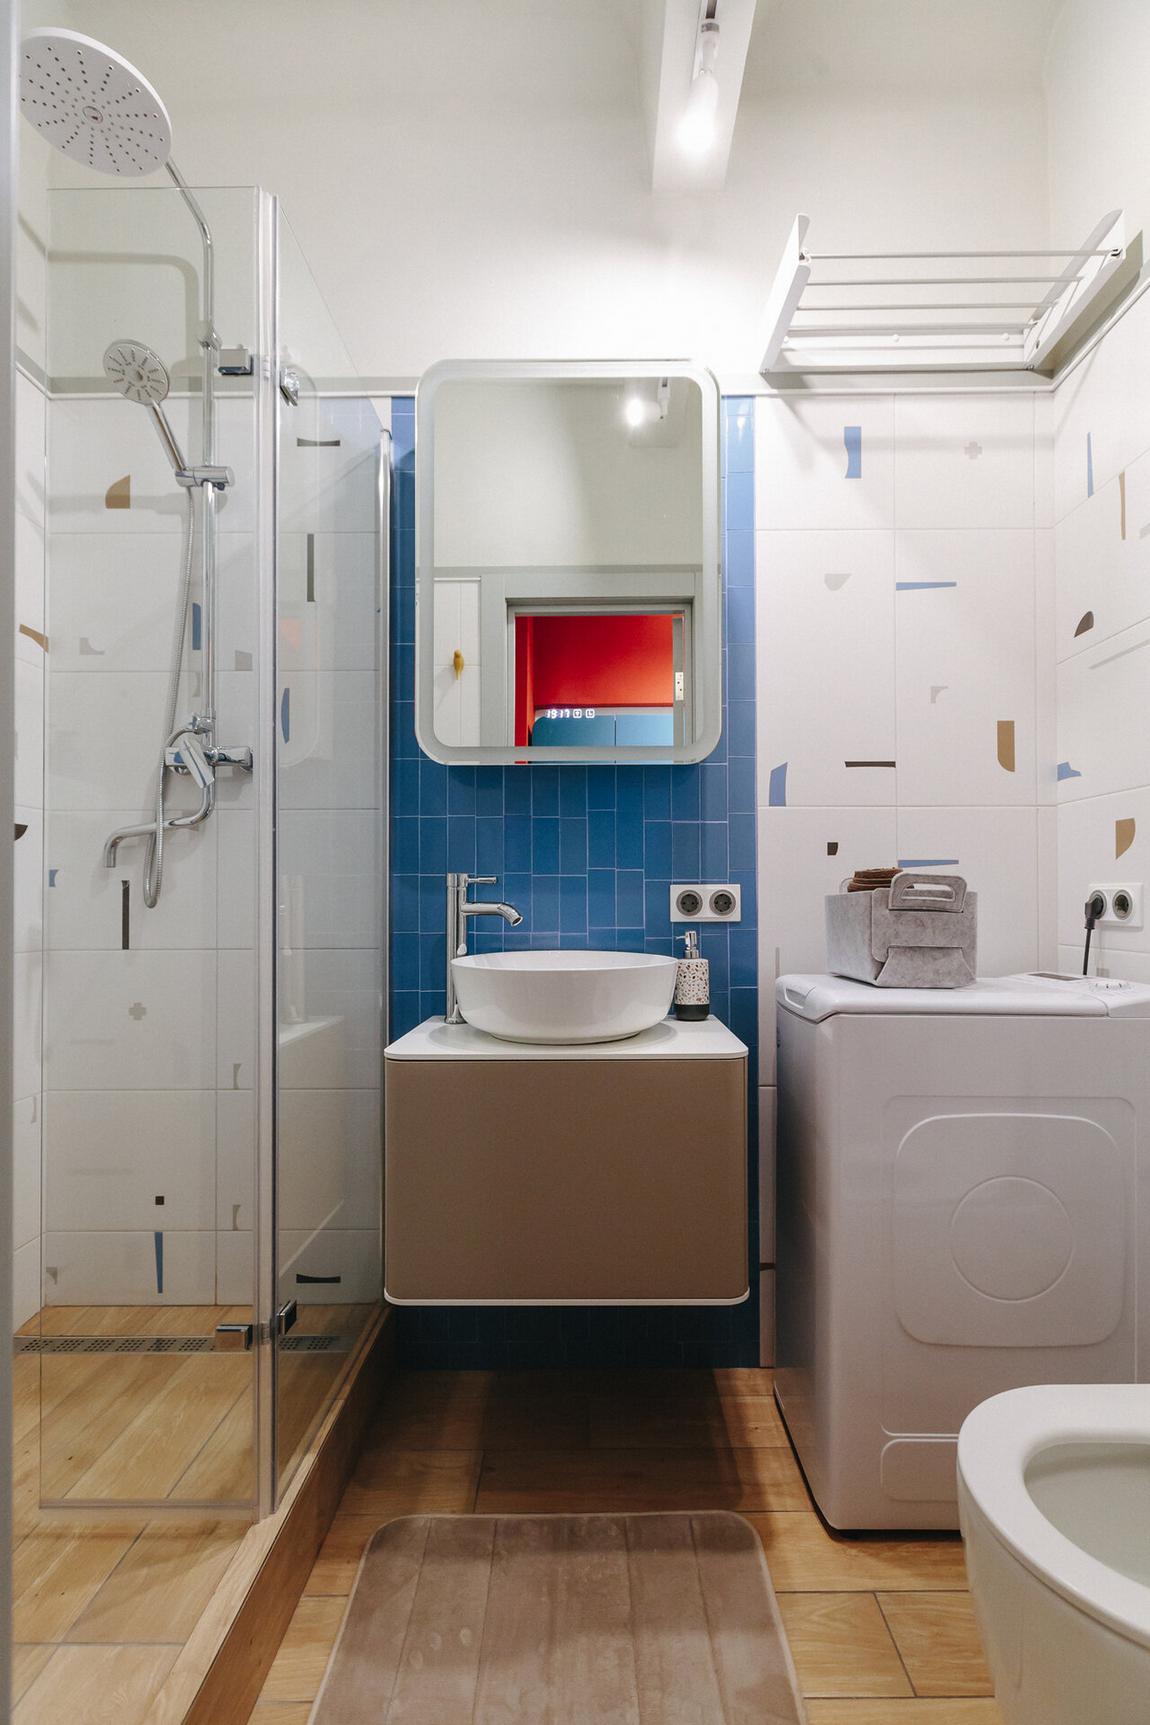 2,8 m2-es fürdőszoba átgondolt berendezése zuhanyfülkével